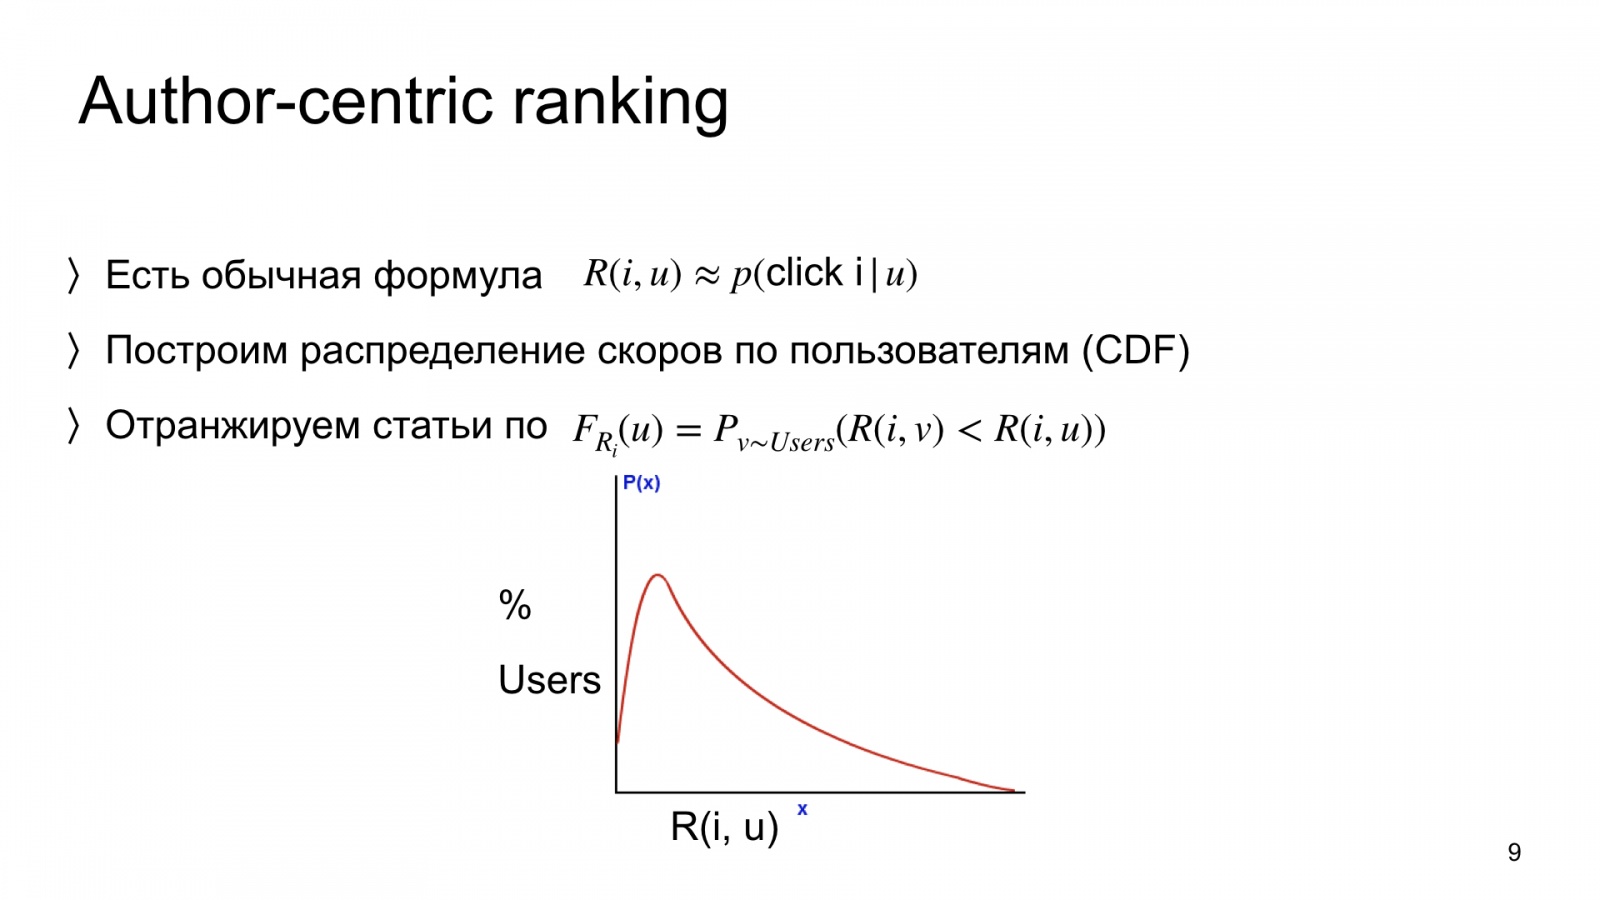 Автороцентричное ранжирование. Доклад Яндекса о поиске релевантной аудитории для авторов Дзена - 9